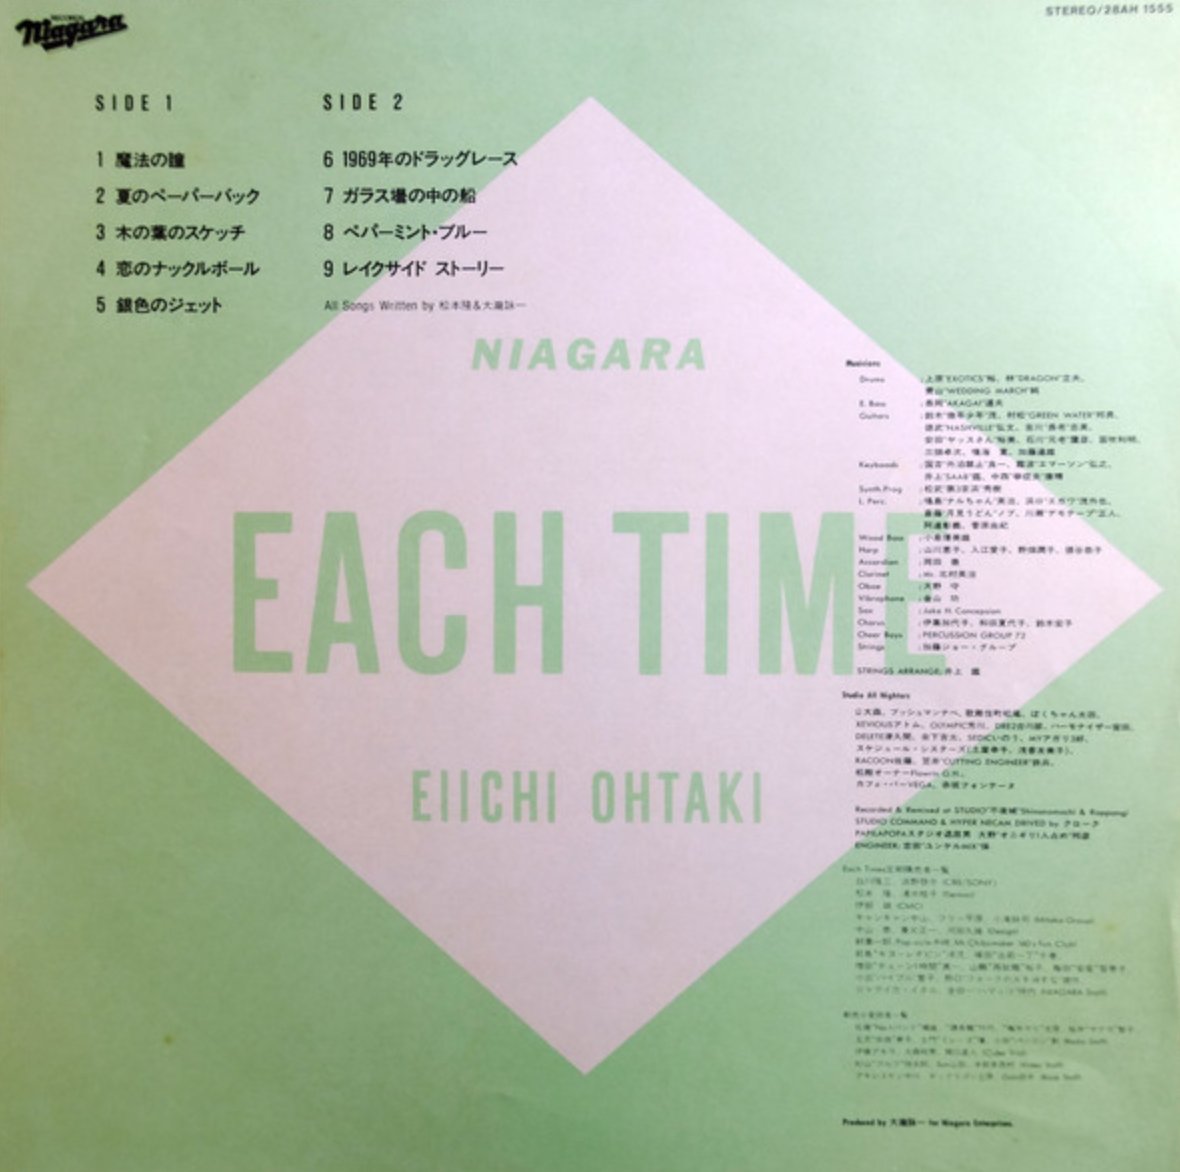 Eiichi Ohtaki - Each Time (Japan Import) - Inner Ocean Records